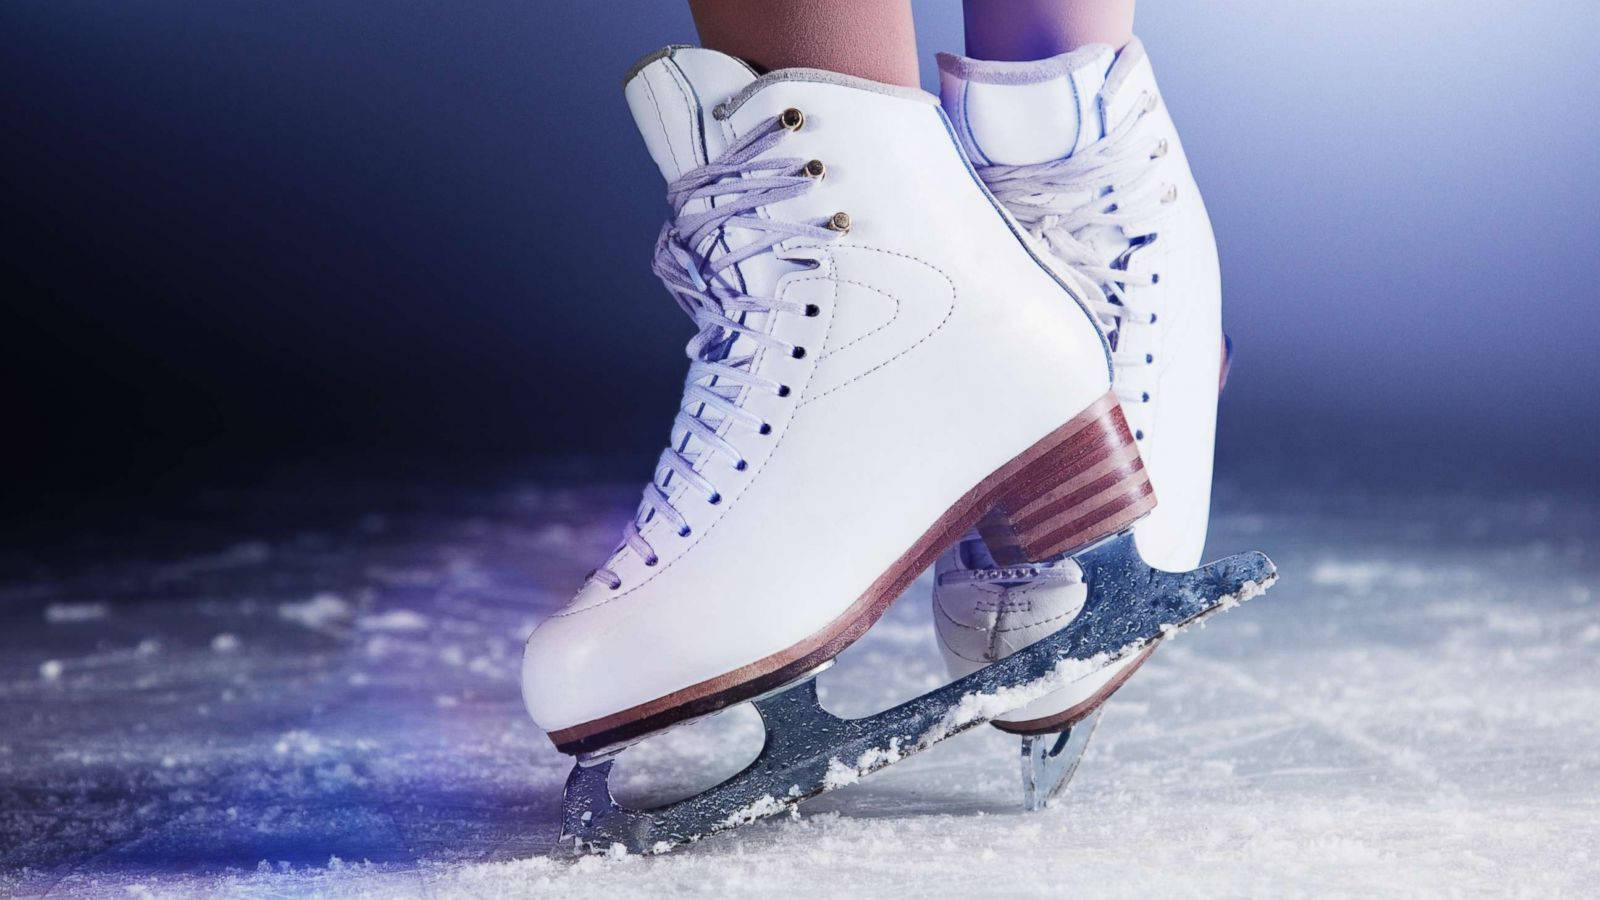 Sød par ishockey sko Wallpaper